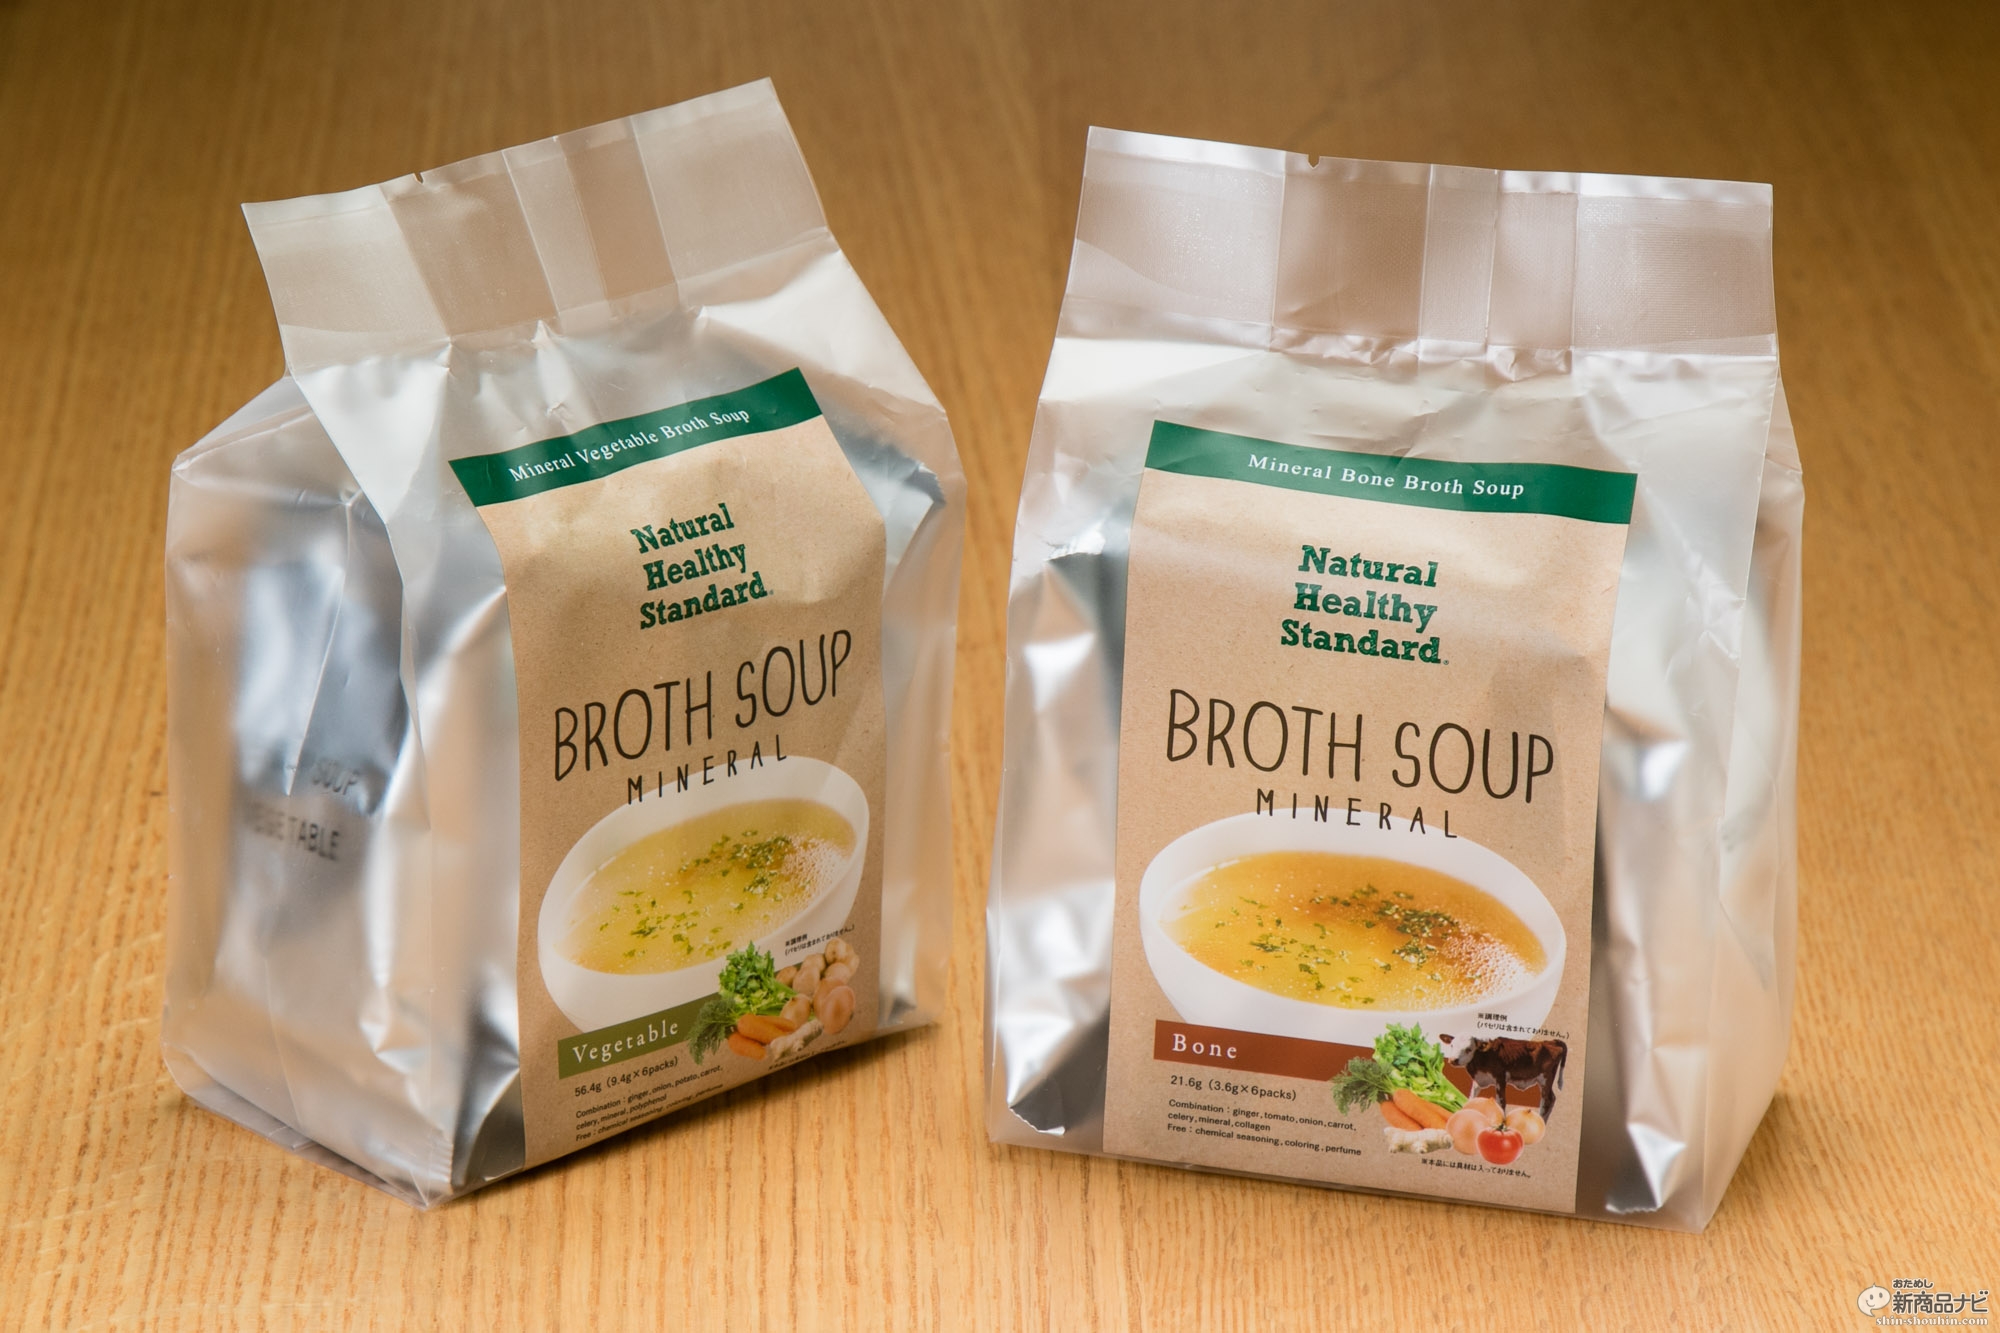 Natural Healthy Standard ブロススープ ボーン ベジタブル 健康意識の高いニューヨーカーの間でブームを呼んでいるヘルシー スープが ついに日本上陸 おためし新商品ナビ